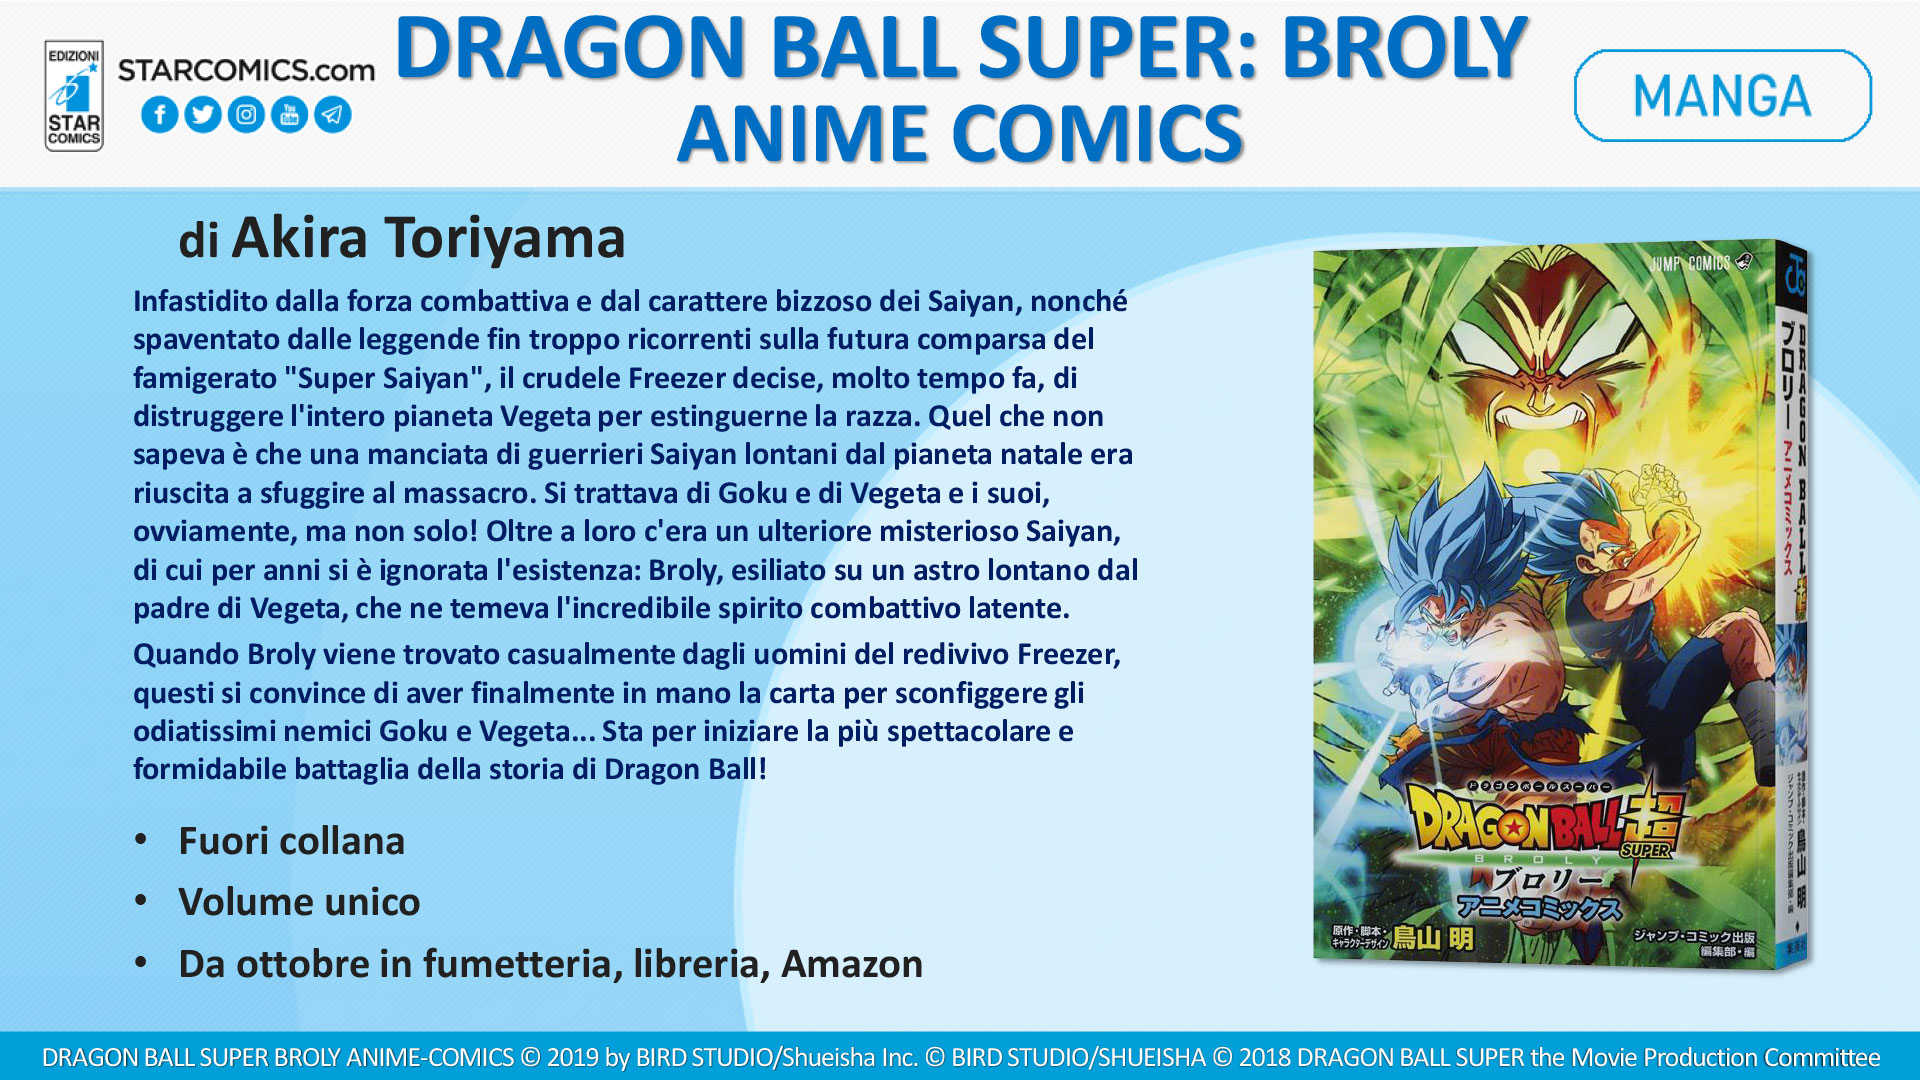 DRAGON BALL SUPER: BROLY ANIME COMICS